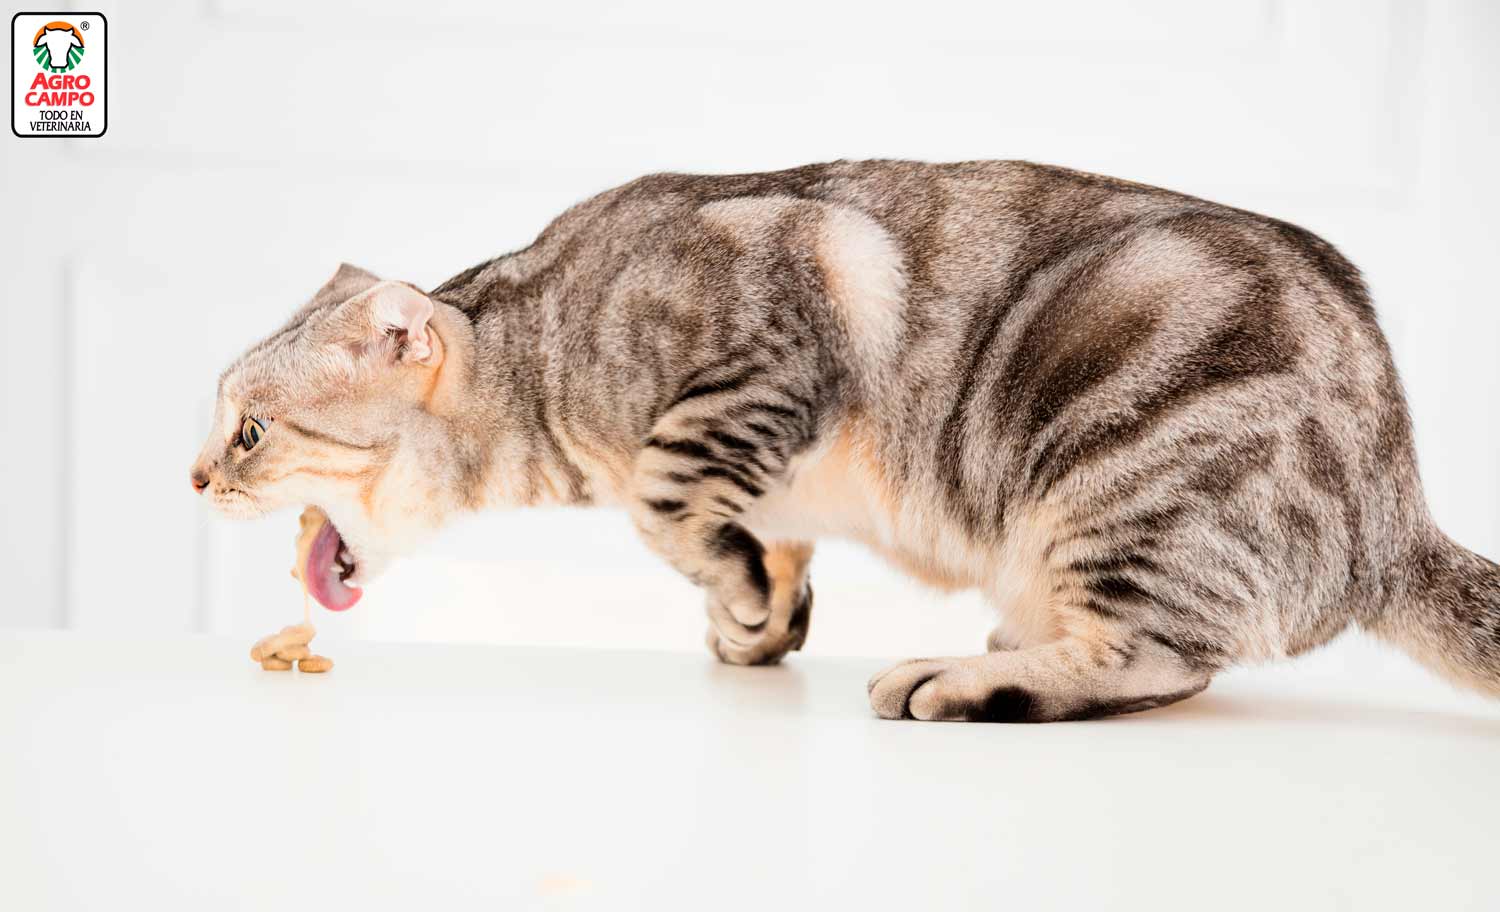 Por que gato vomitando? Principales causas. - Blog Agrocampo Colombia